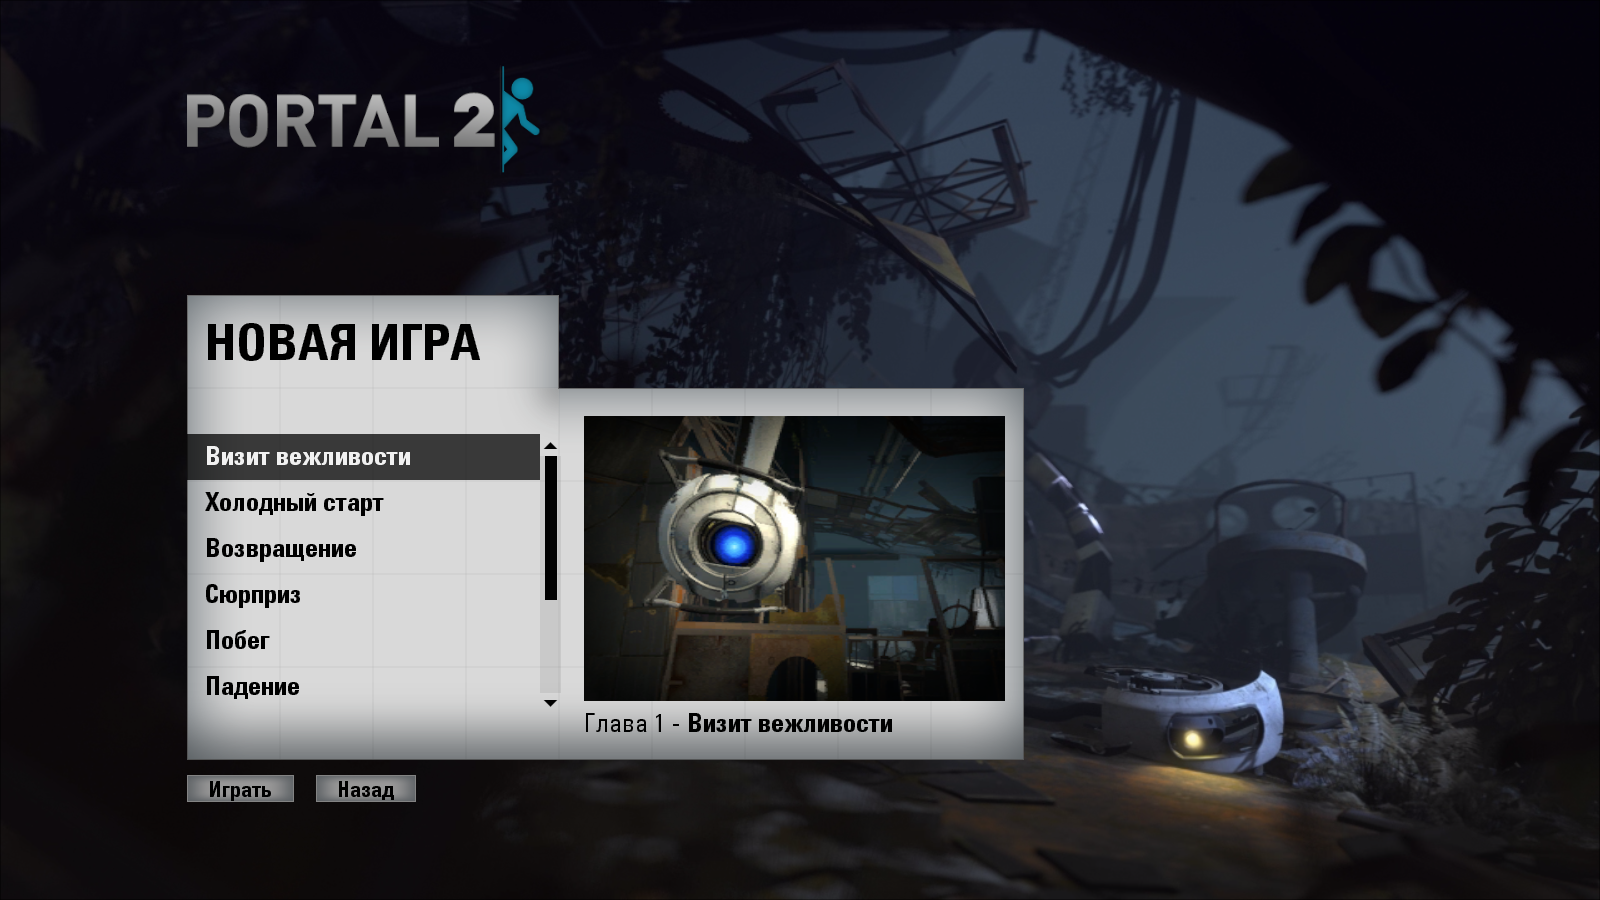 Усла портал. Portal 2 главное меню. Портал игра. Портал. Меню игры портал 2.